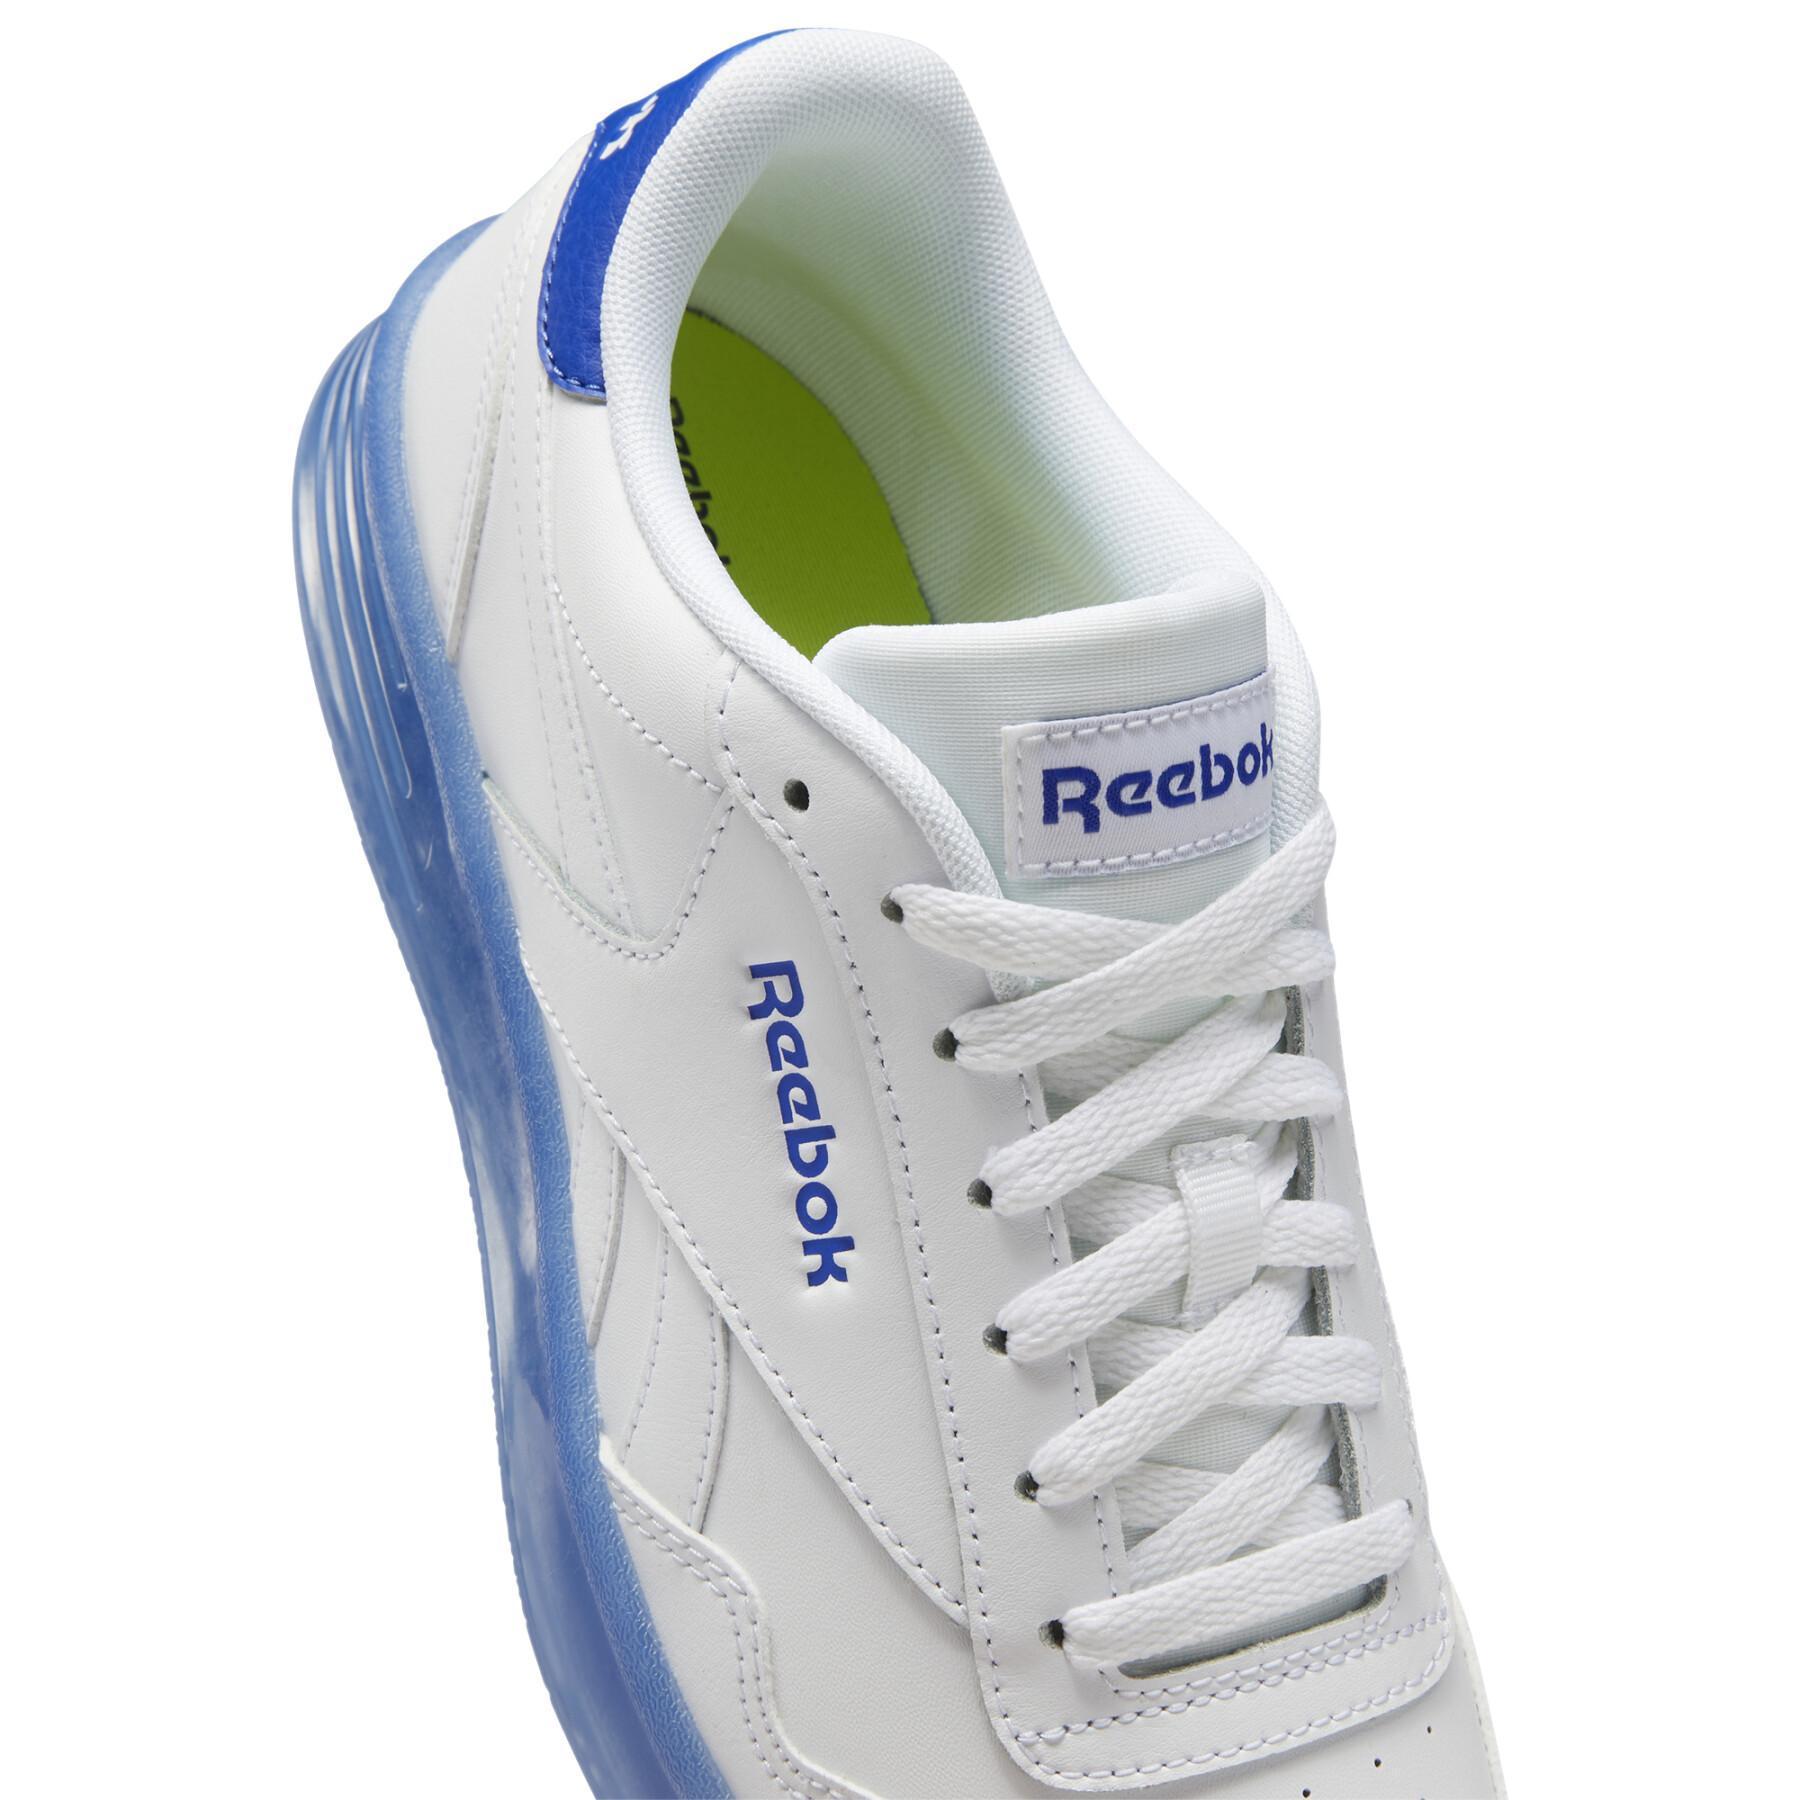 Schuhe Reebok Royal Techque T CE